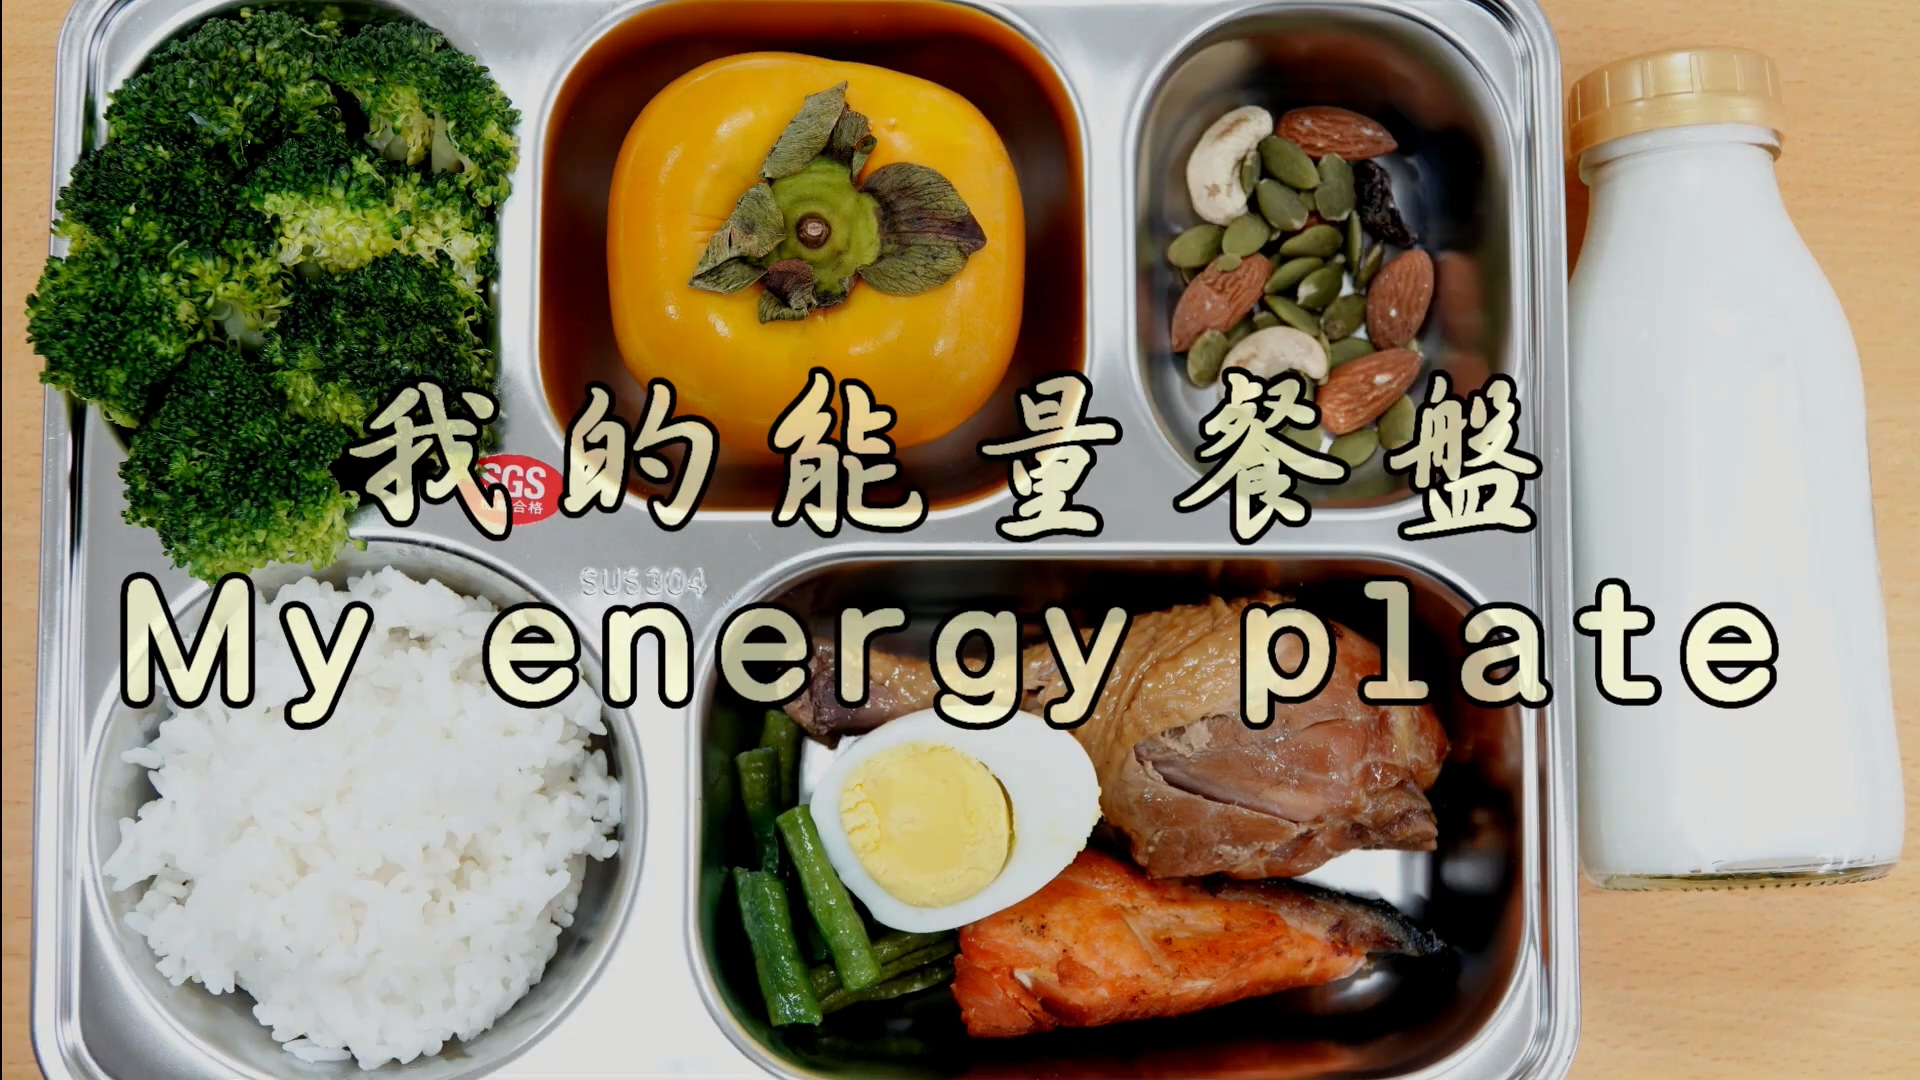 我的能量餐盤/My energy plate